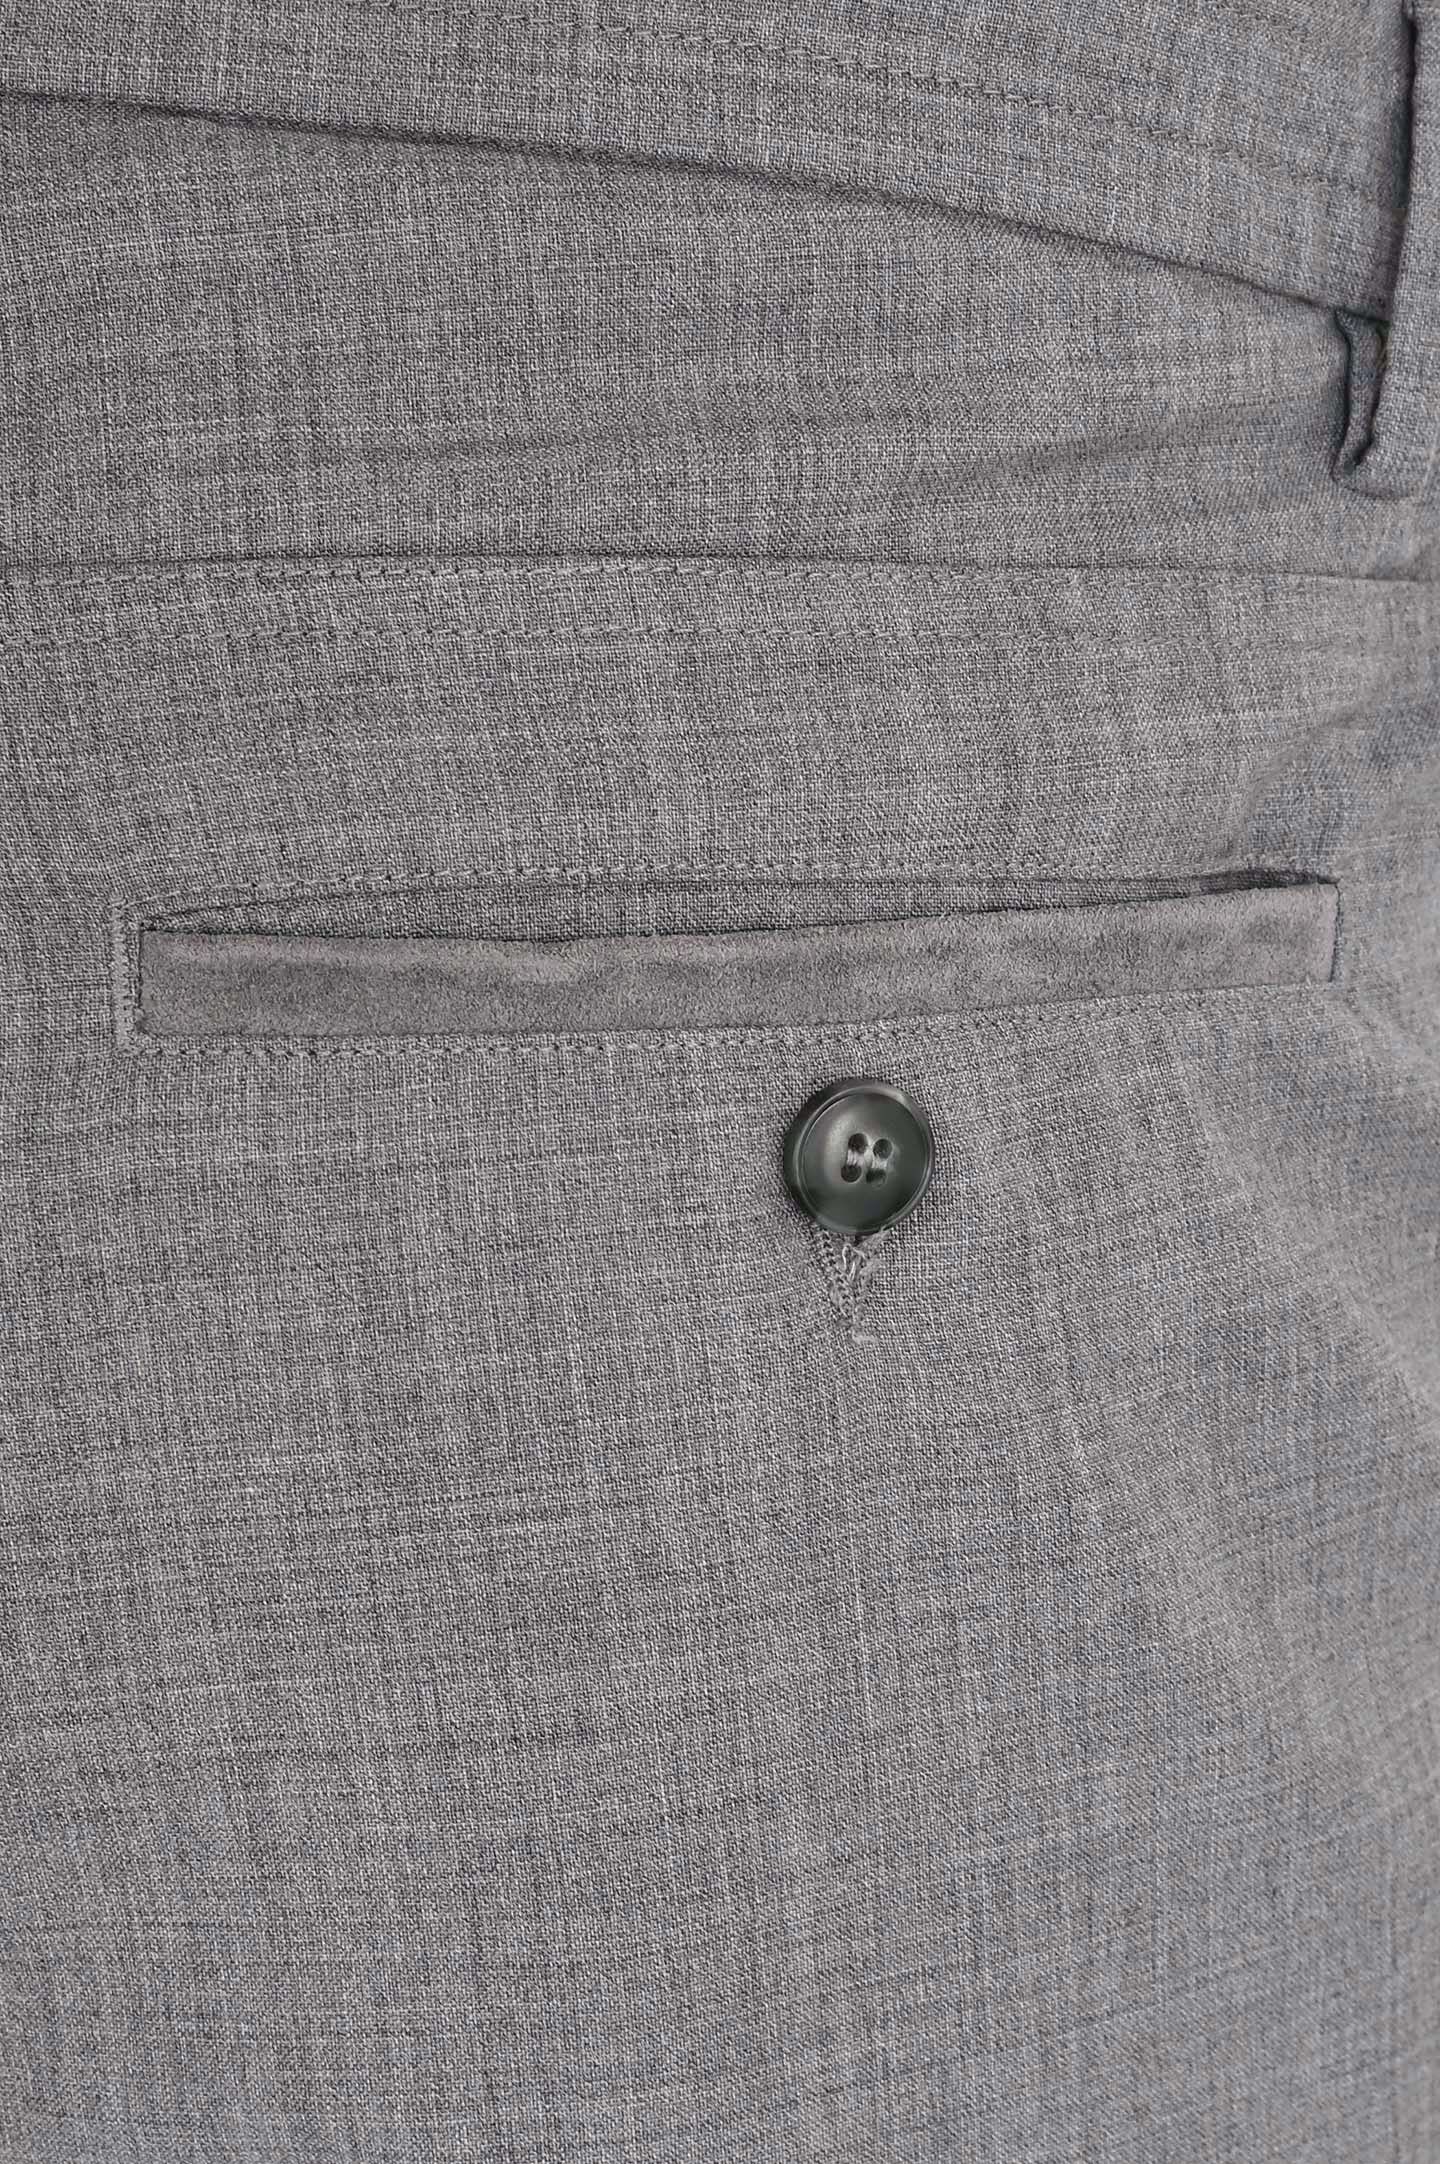 Классические шерстяные брюки CANALI PR01197 91678/-R, цвет: Серый, Мужской